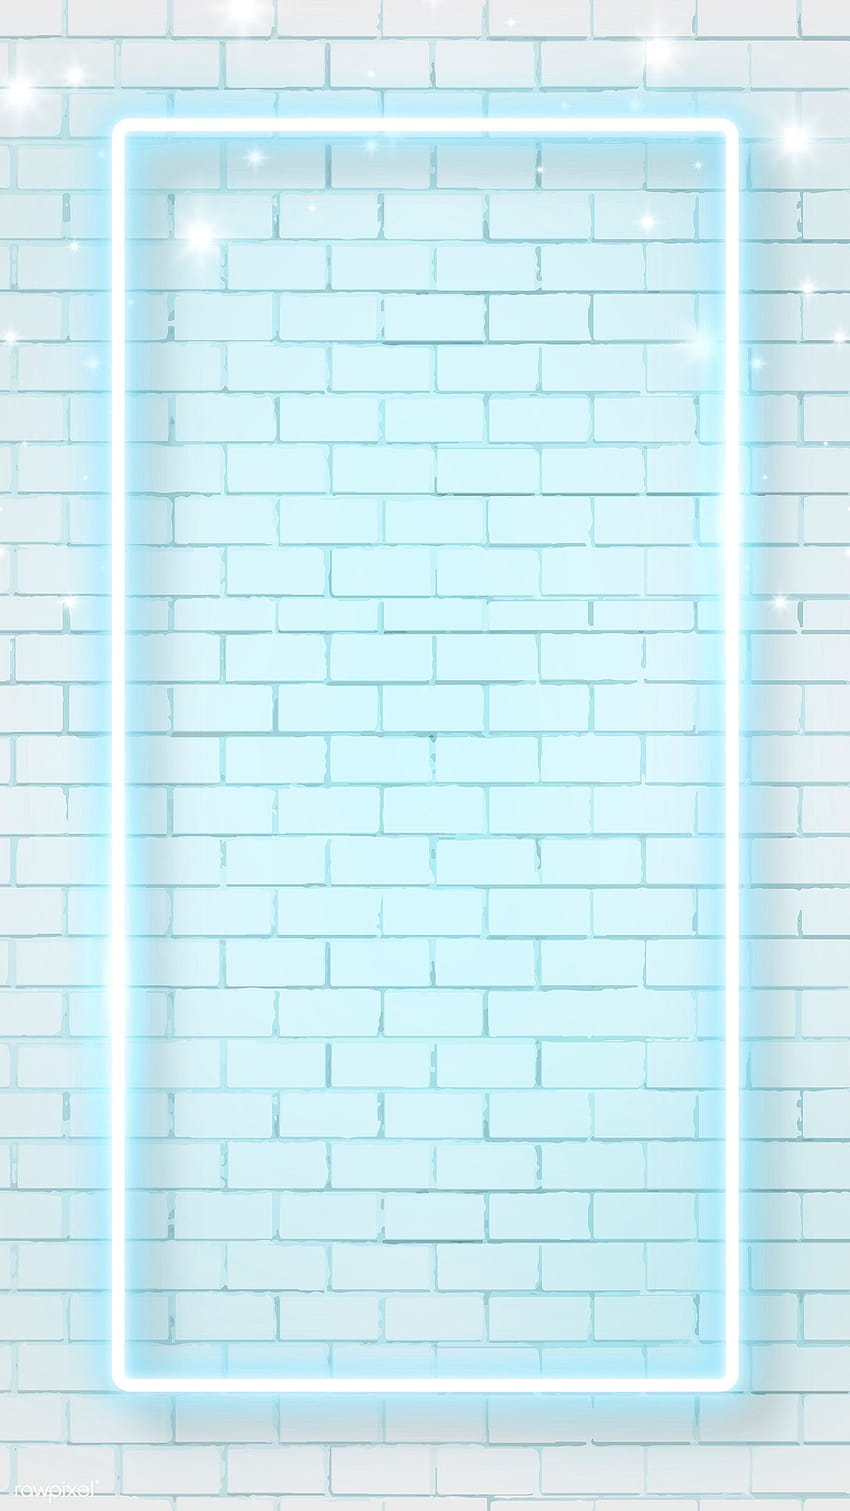 vektor premium bingkai neon biru pada latar belakang dinding bata seluler, desain bata neon dengan warna biru wallpaper ponsel HD